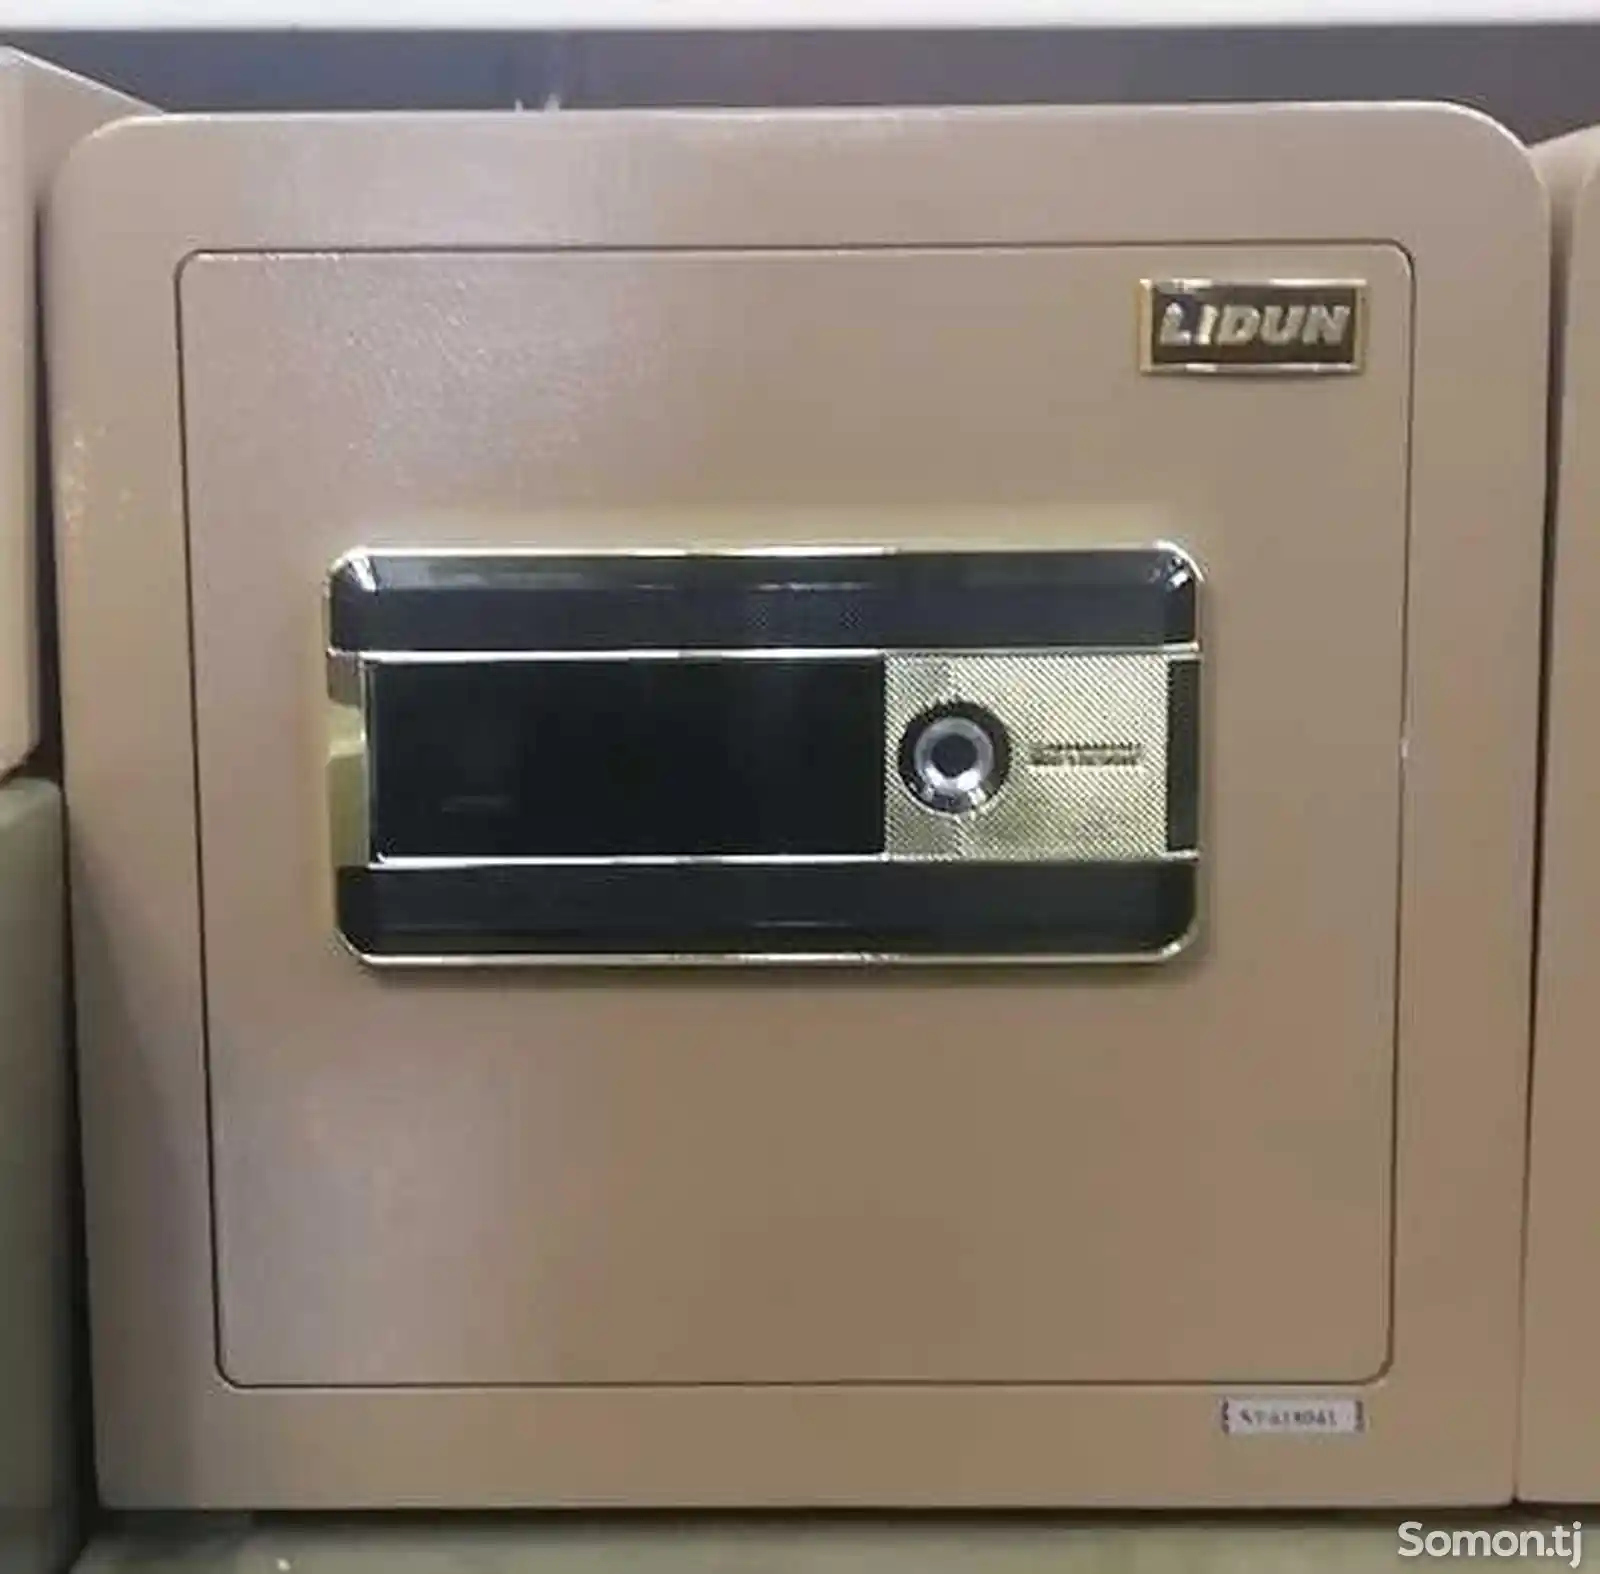 Сейф 35 см Lidun со сканером отпечатка пальца-1